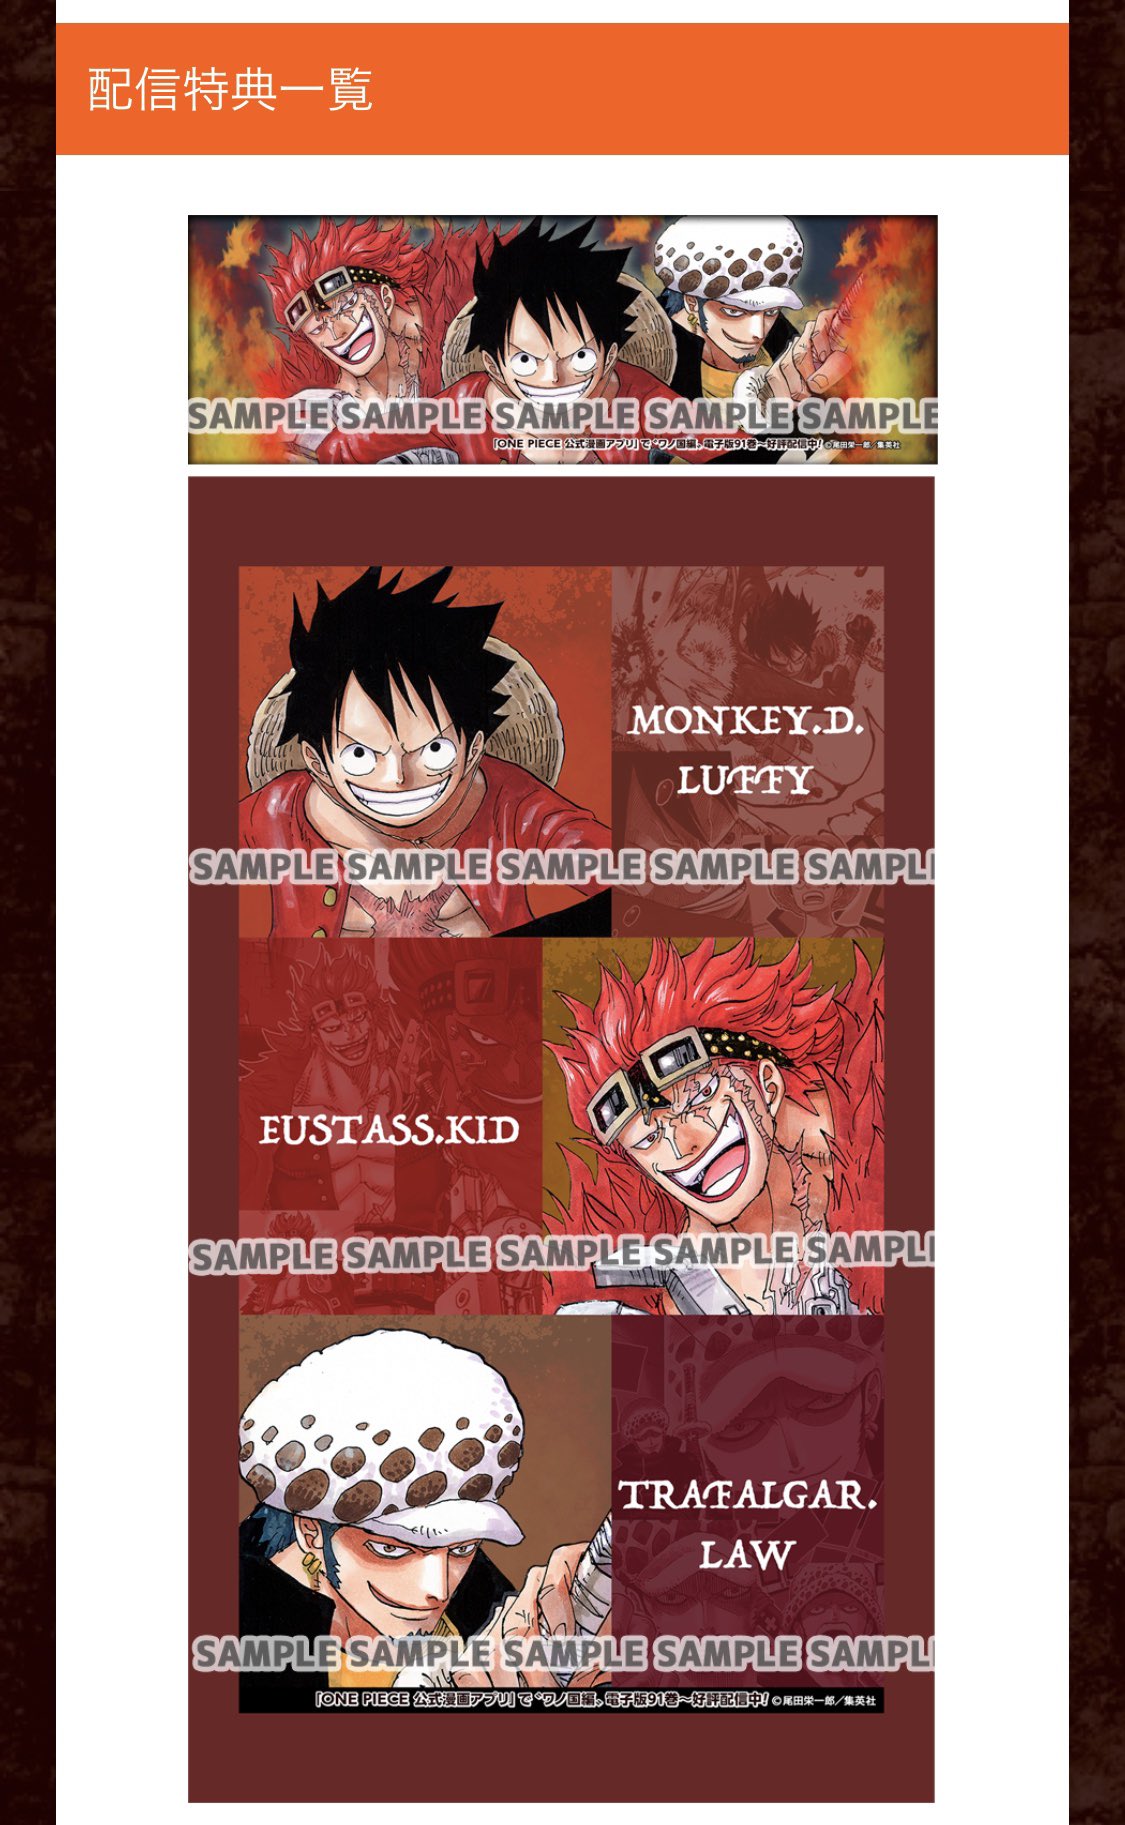 Kei One Piece垢 One Piece 97巻発売記念のルフィ ロー キッド3船長のtwitterヘッダー画像 壁紙がカッコいい 早速ヘッダー画像と壁紙を変えました T Co Swt1unlcz1 Twitter